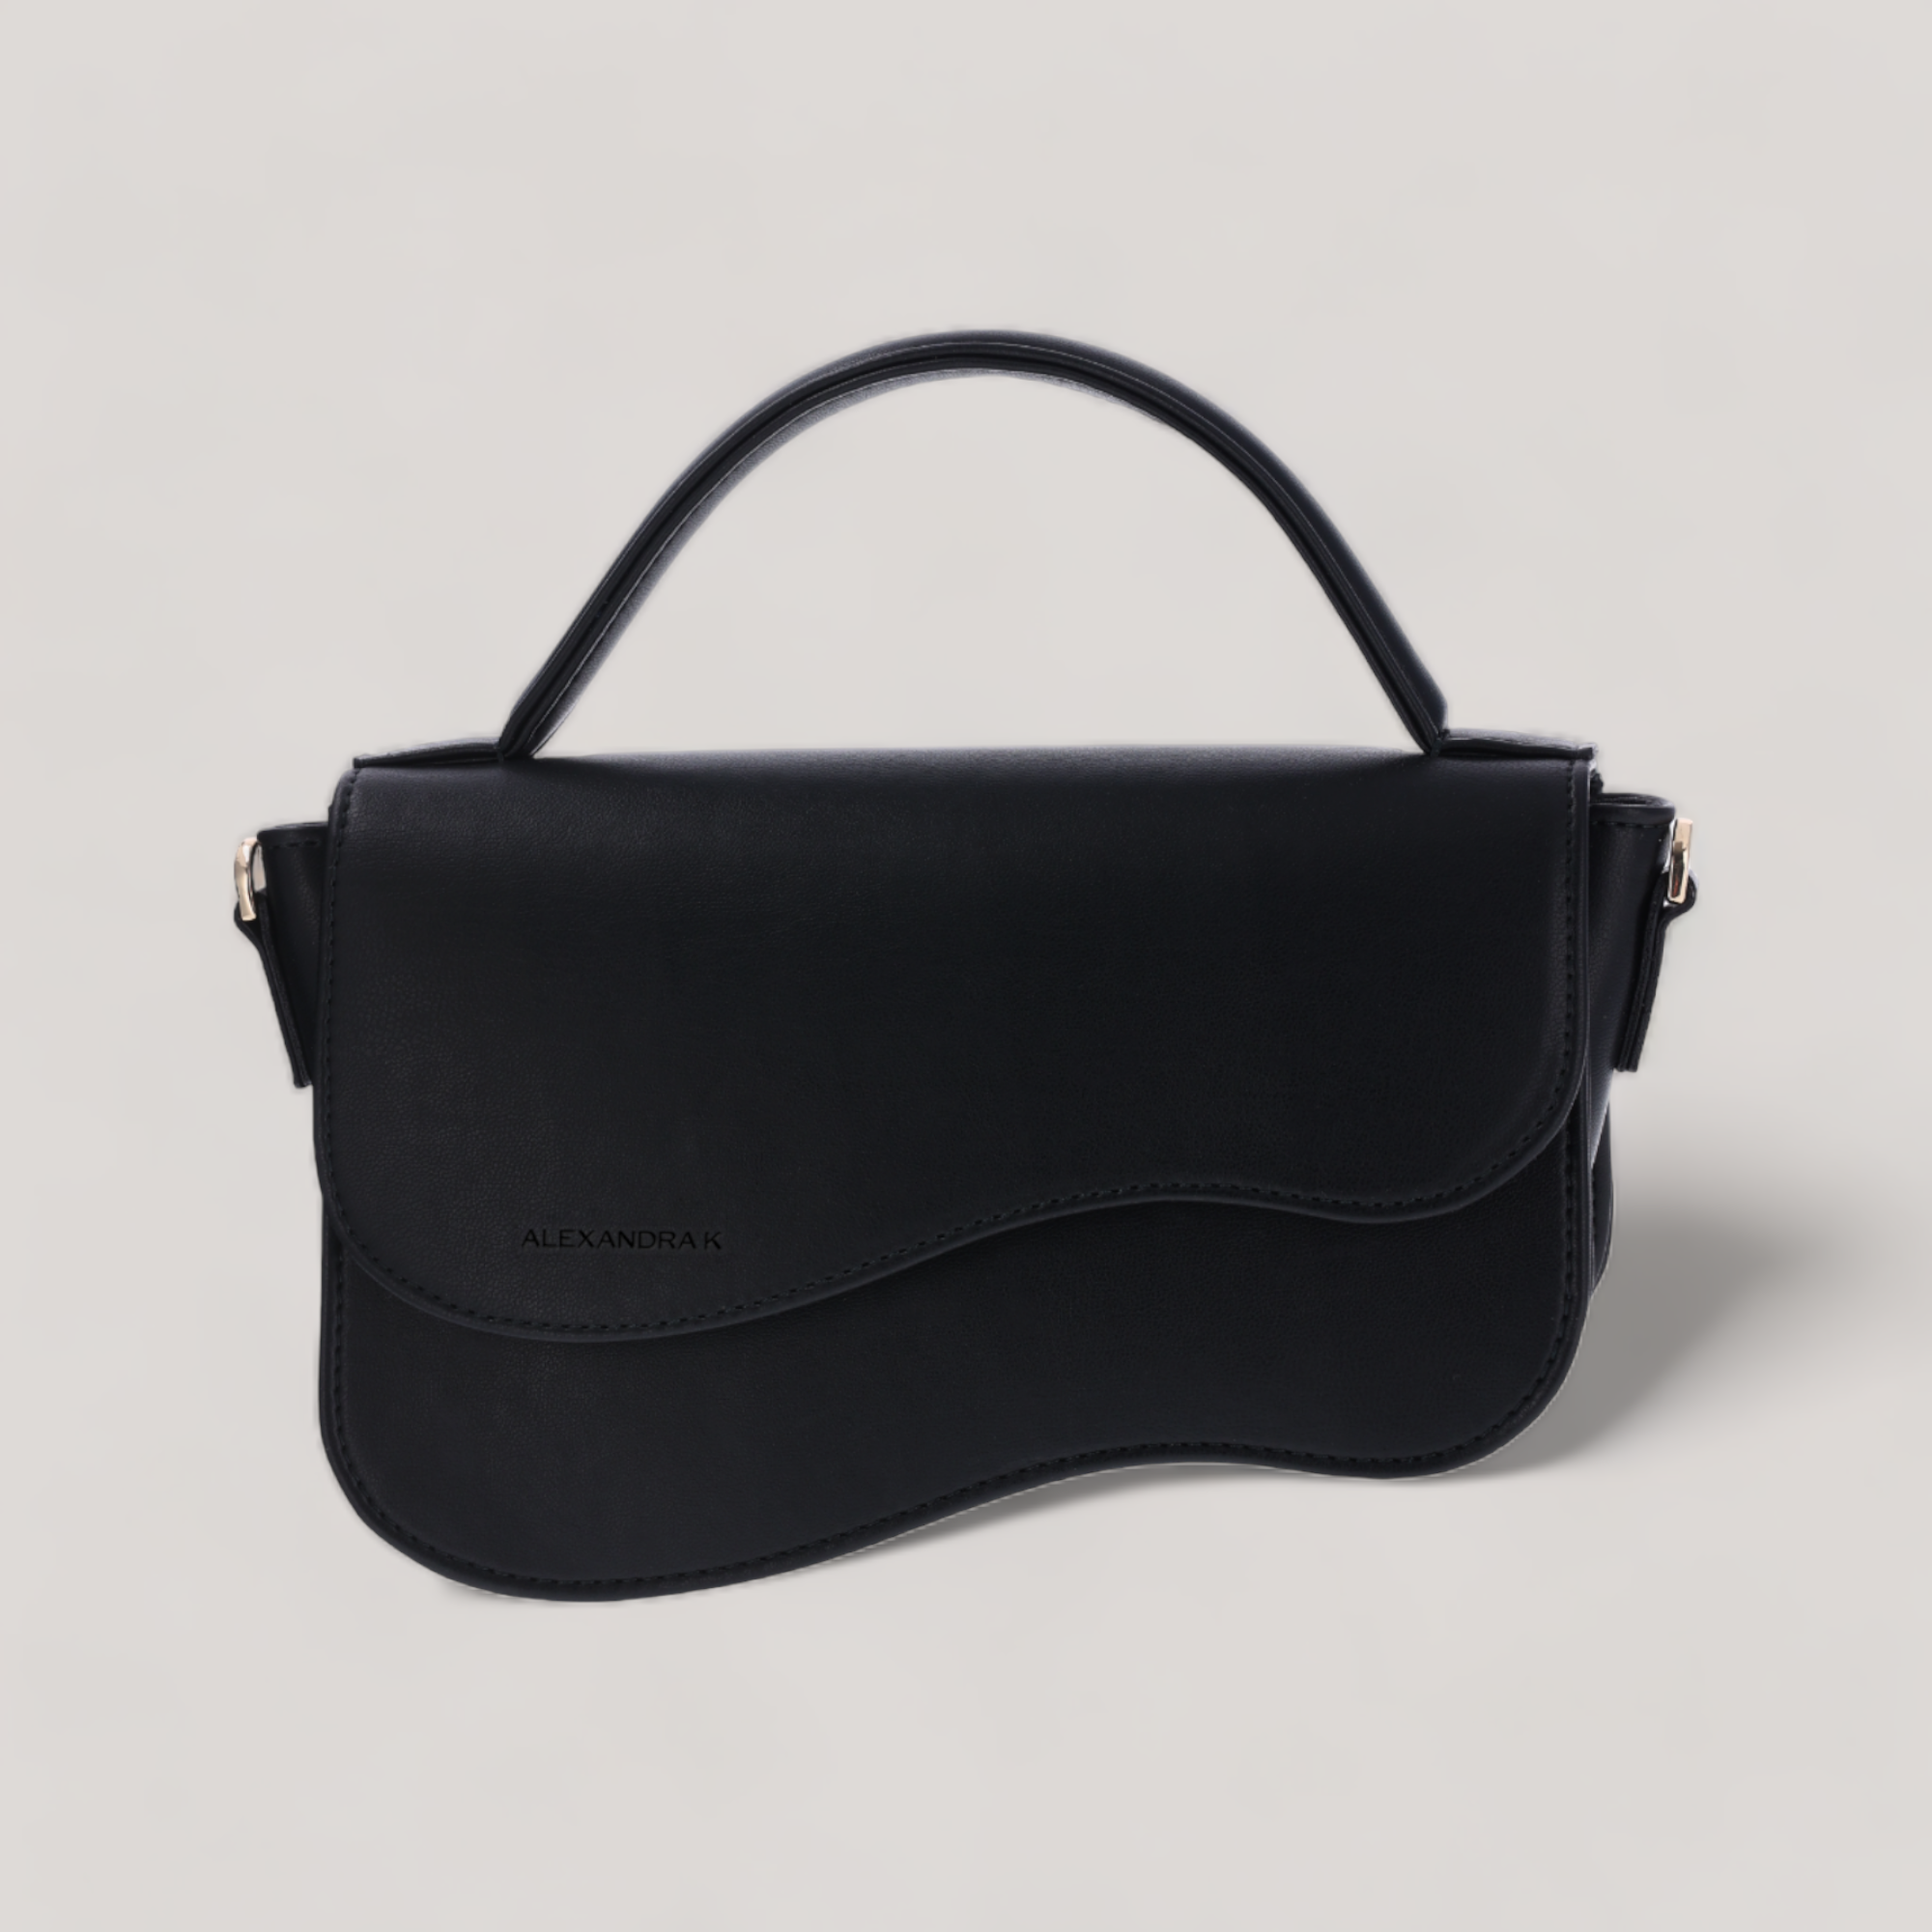 Nami - Mini Shoulder Bag - Black Ink Corn Leather